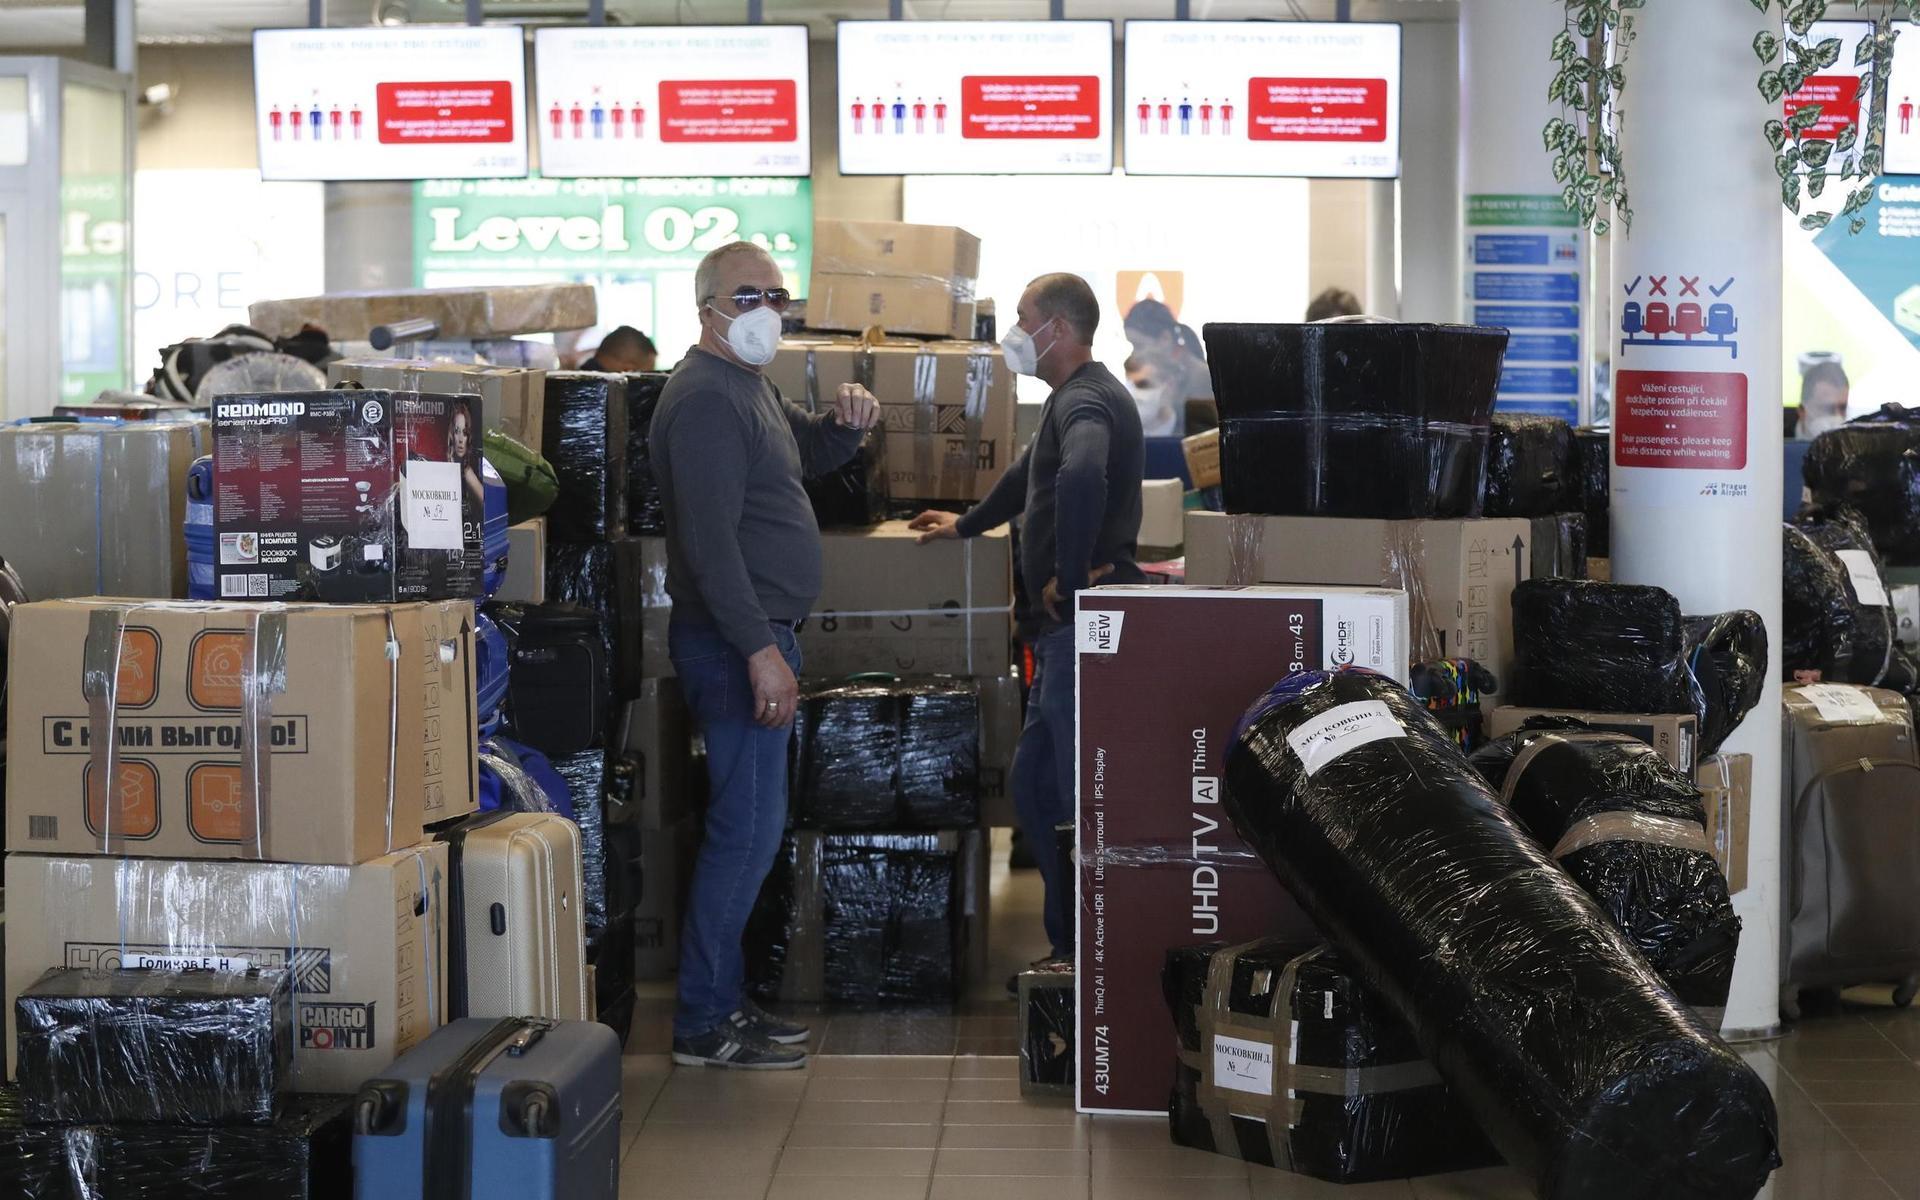 Bagage checkas in på Prags flygplats Vaclav Havel i samband med att ett ryskt regeringsplan har landat efter utvisningen av 18 diplomater.